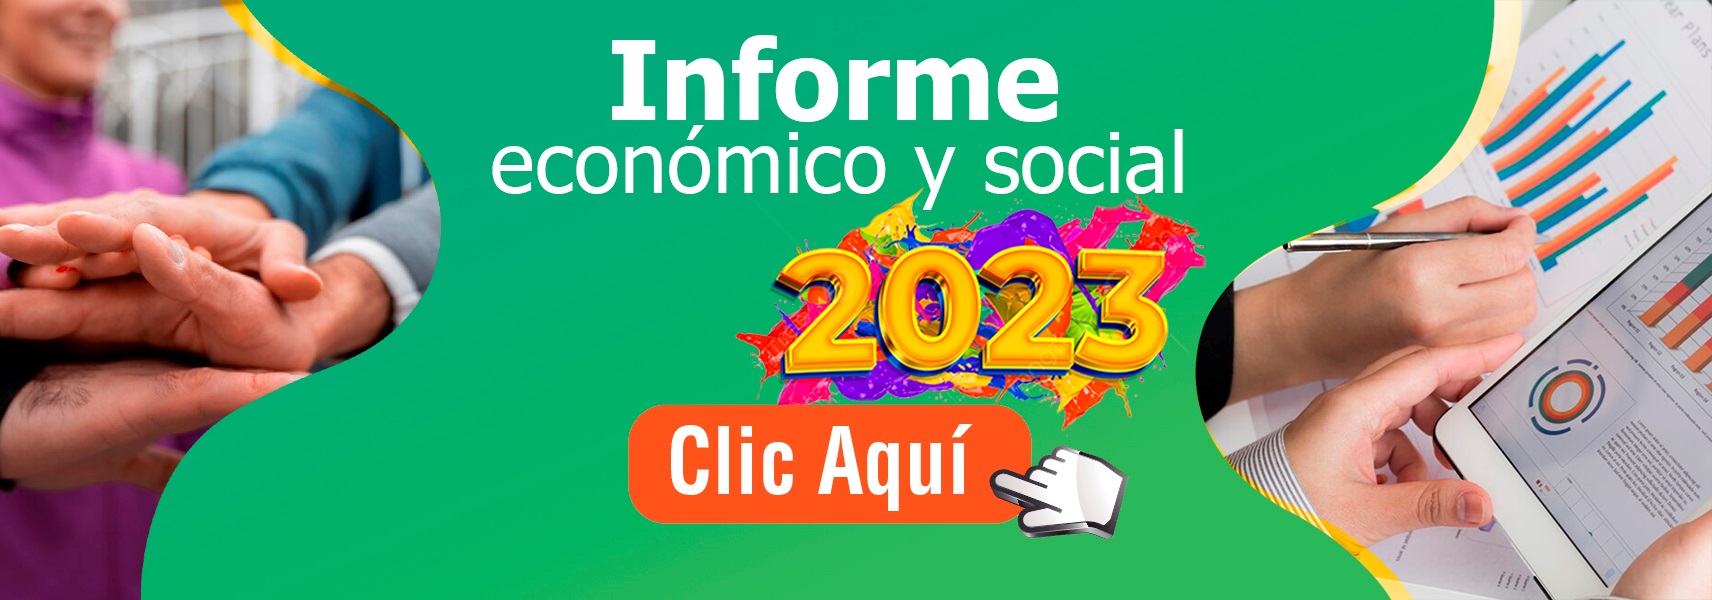 INFORME ECONOMICO Y SOCIAL 2023